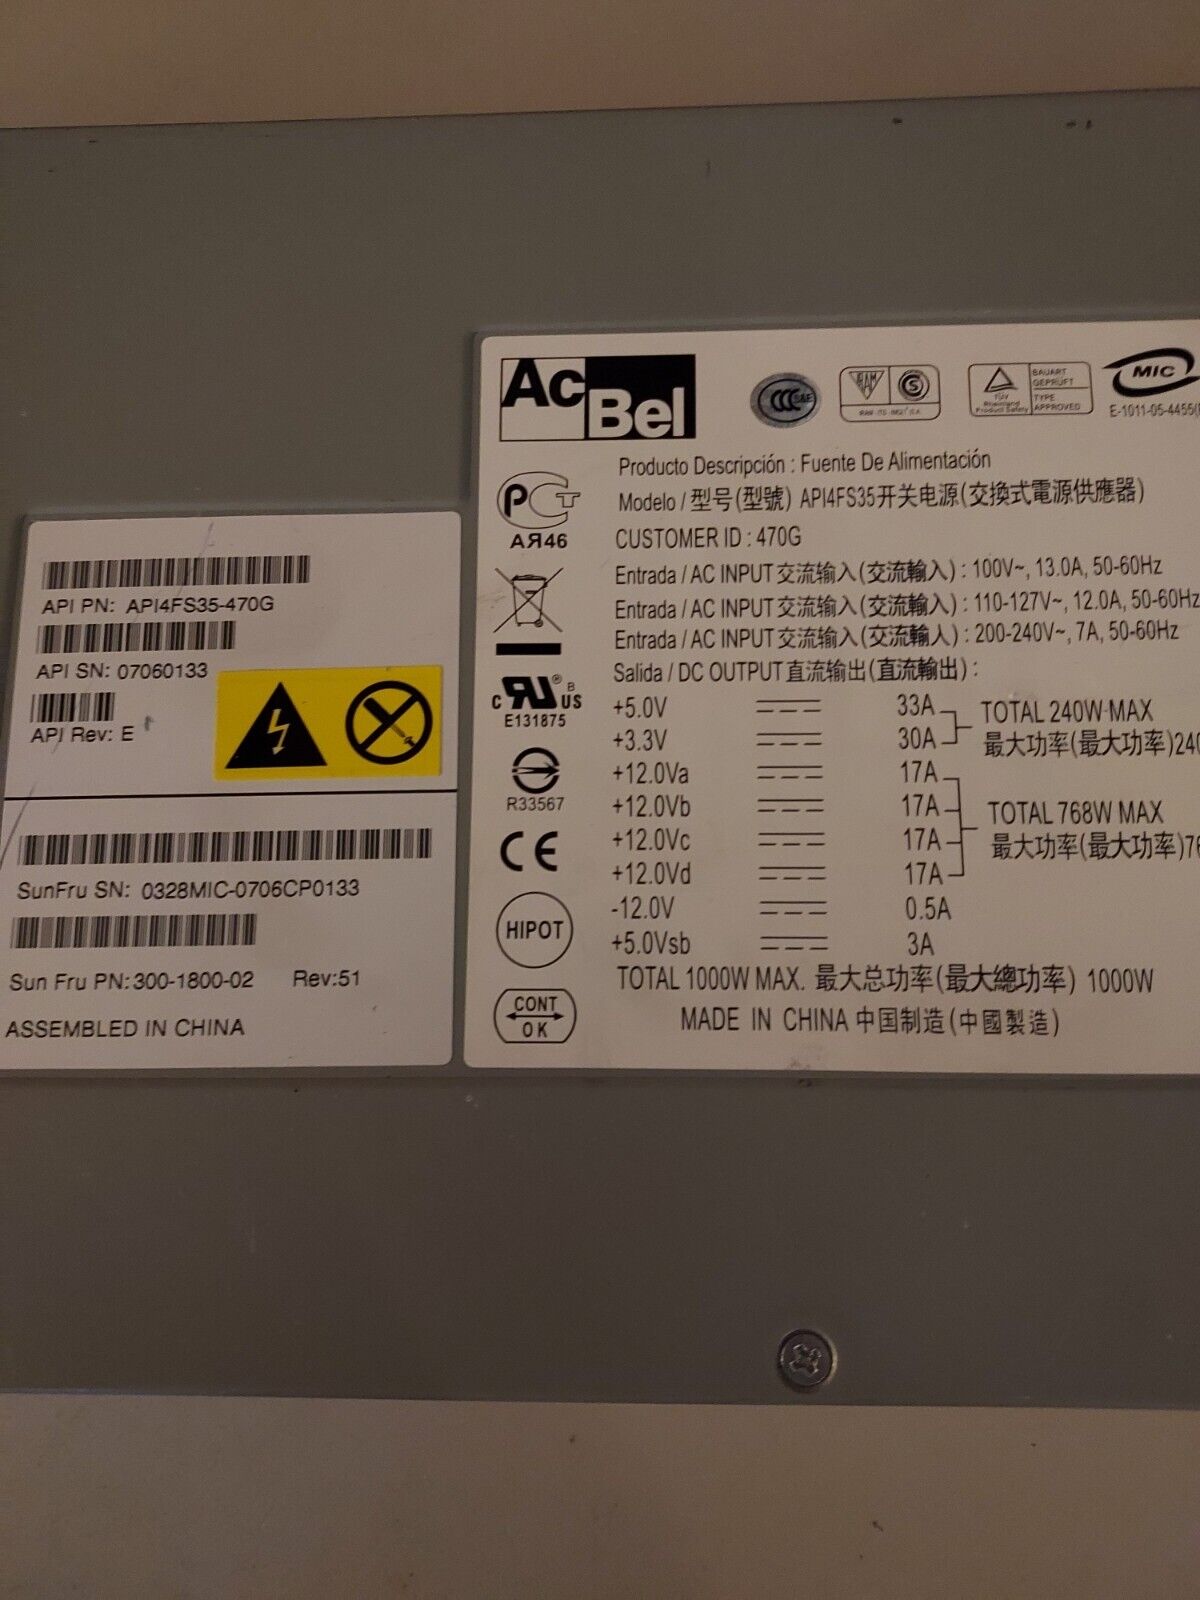 AcBel Model AP14FS35 Sun PN 300-1800-02 Rev 51 1000 Watt Power Supply GarA4